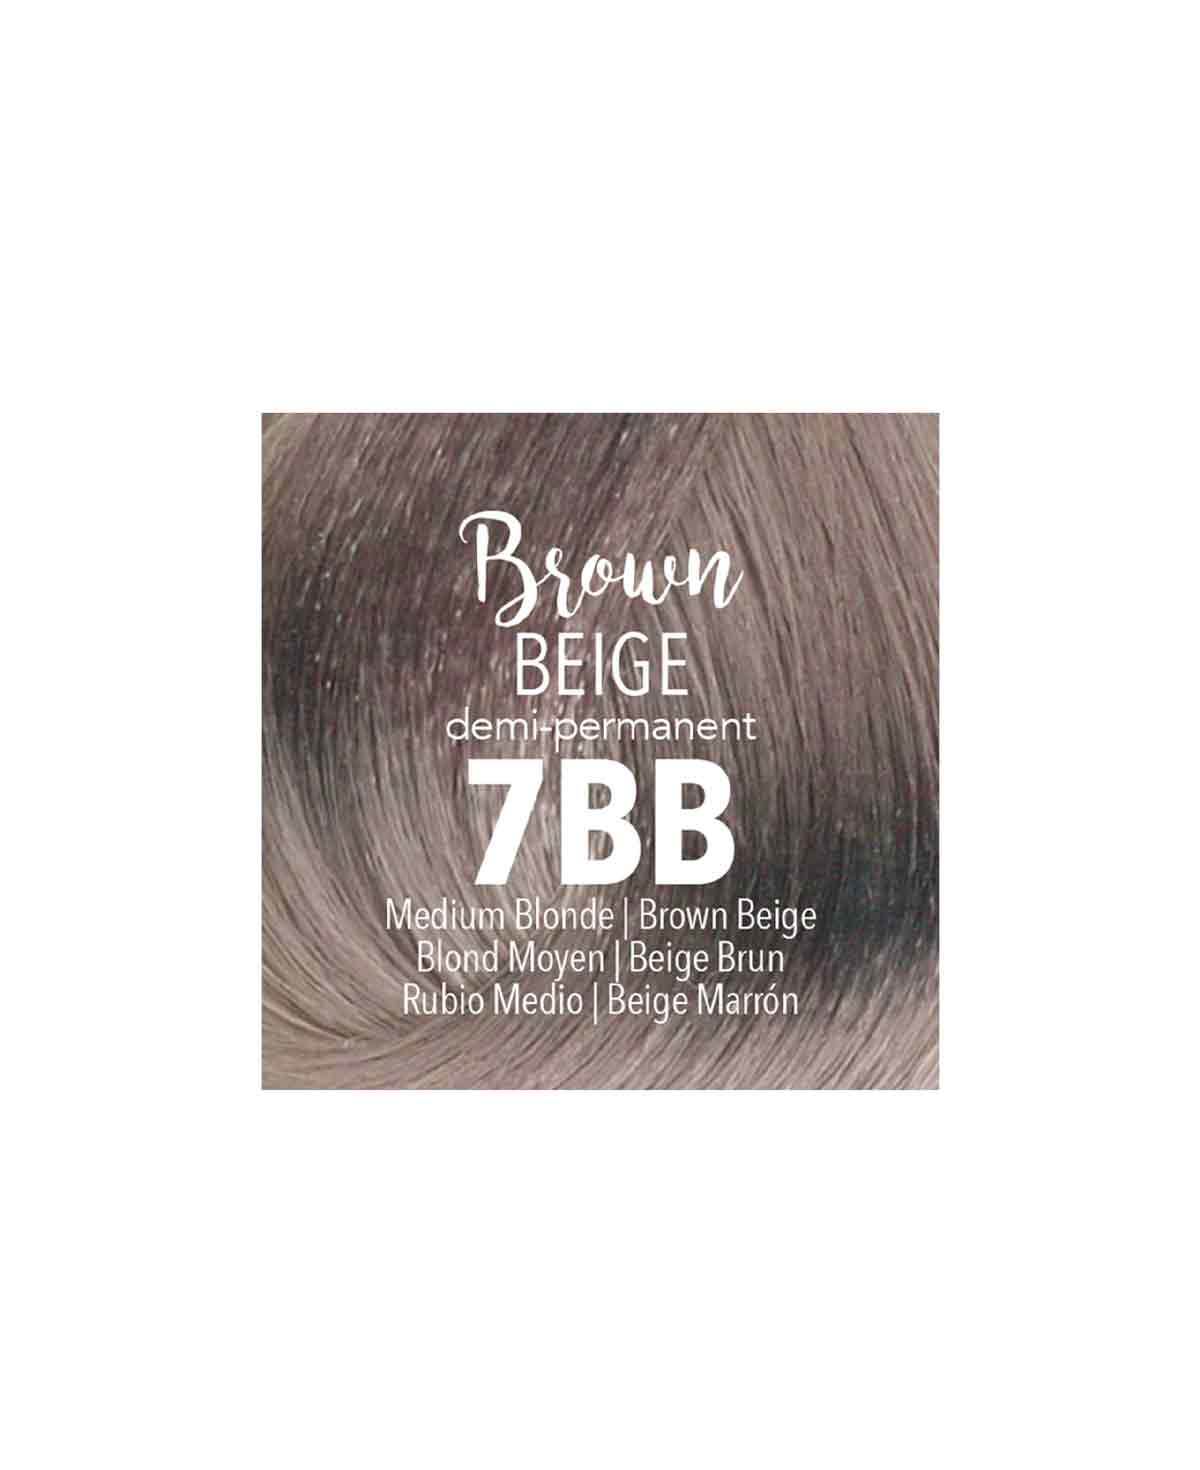 Mydentity - 7BB Medium Blonde Brown Beige Demi-P